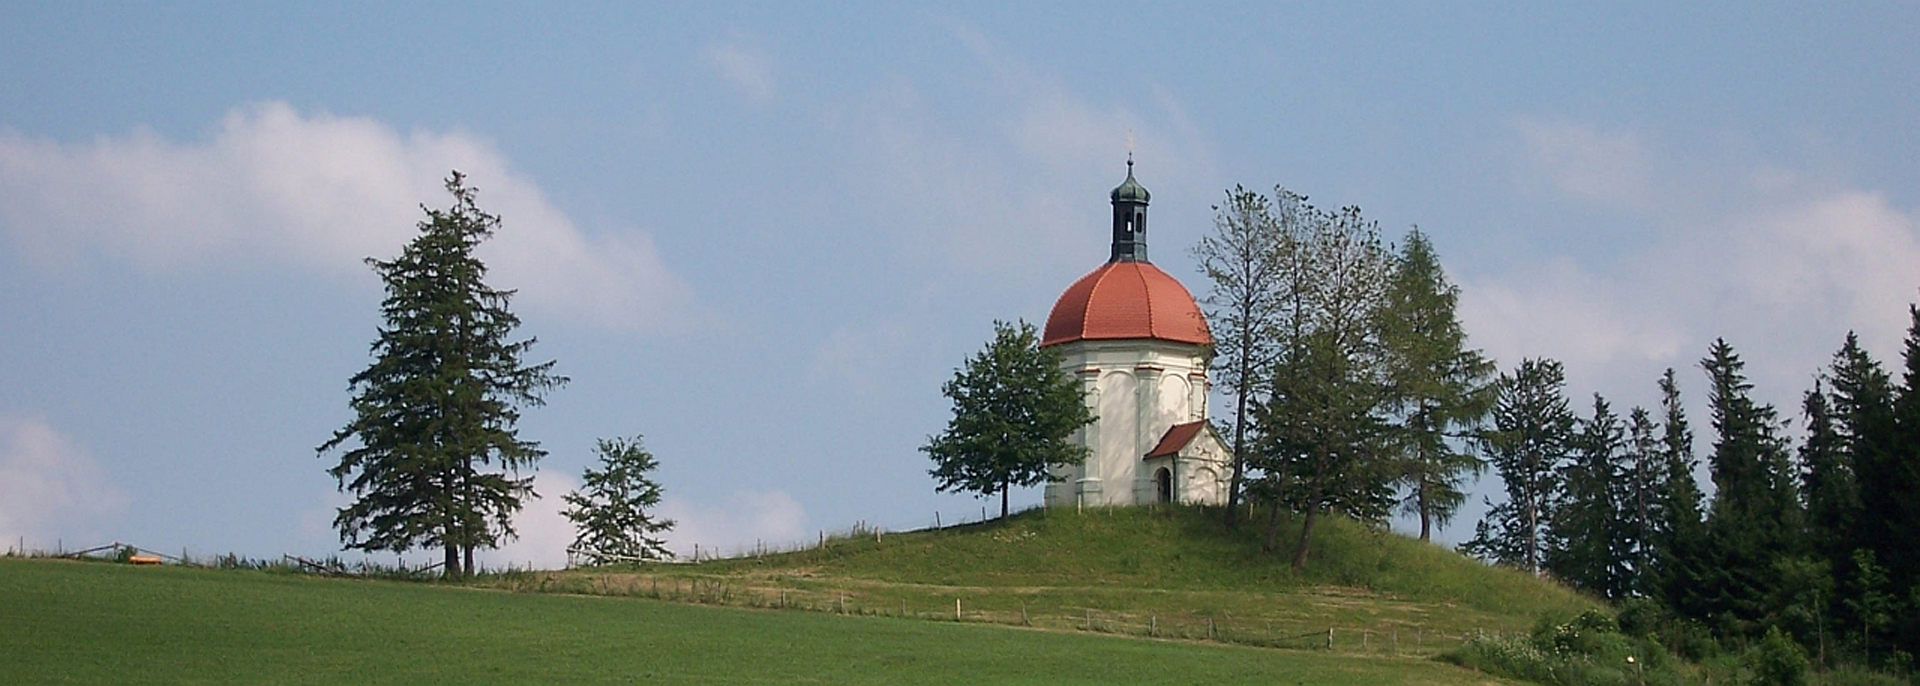 Die Buschelkapelle bei Ottobeuren